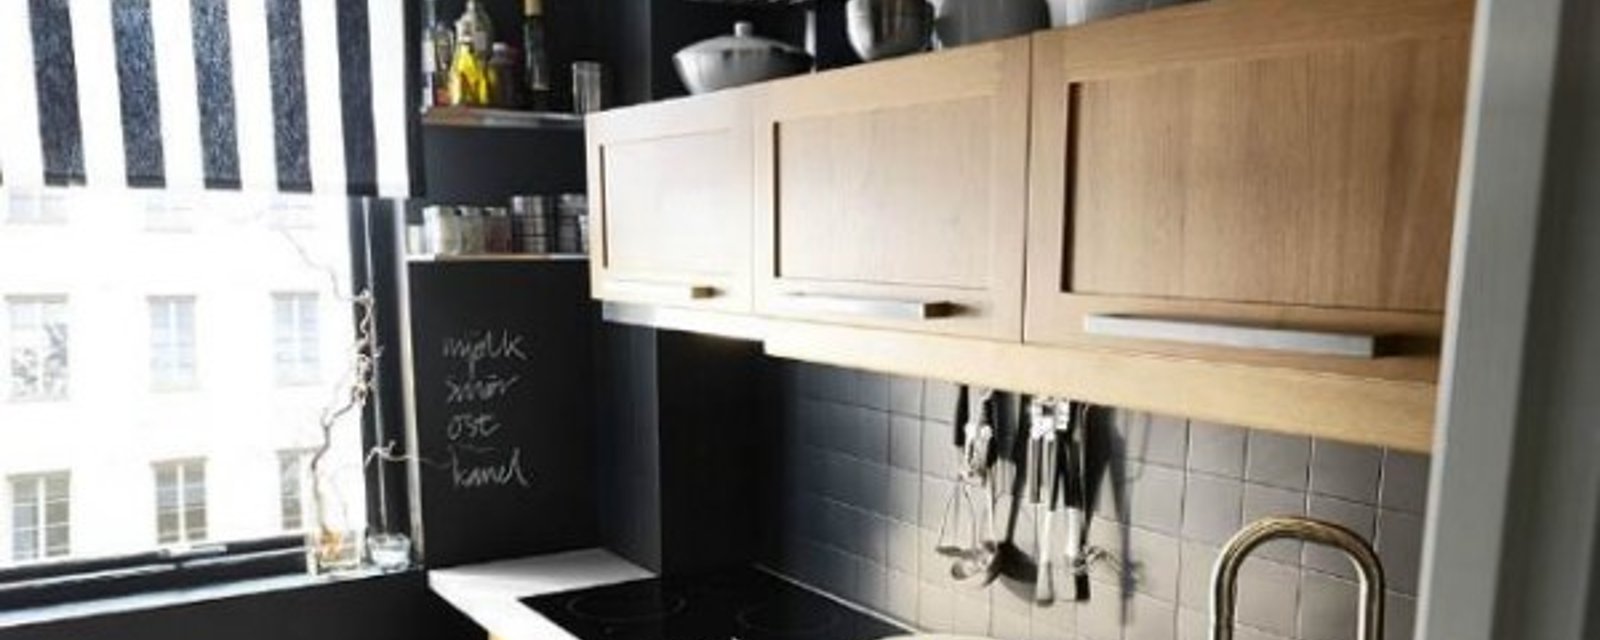 20 idées géniales pour décorer votre cuisine de façon originale!